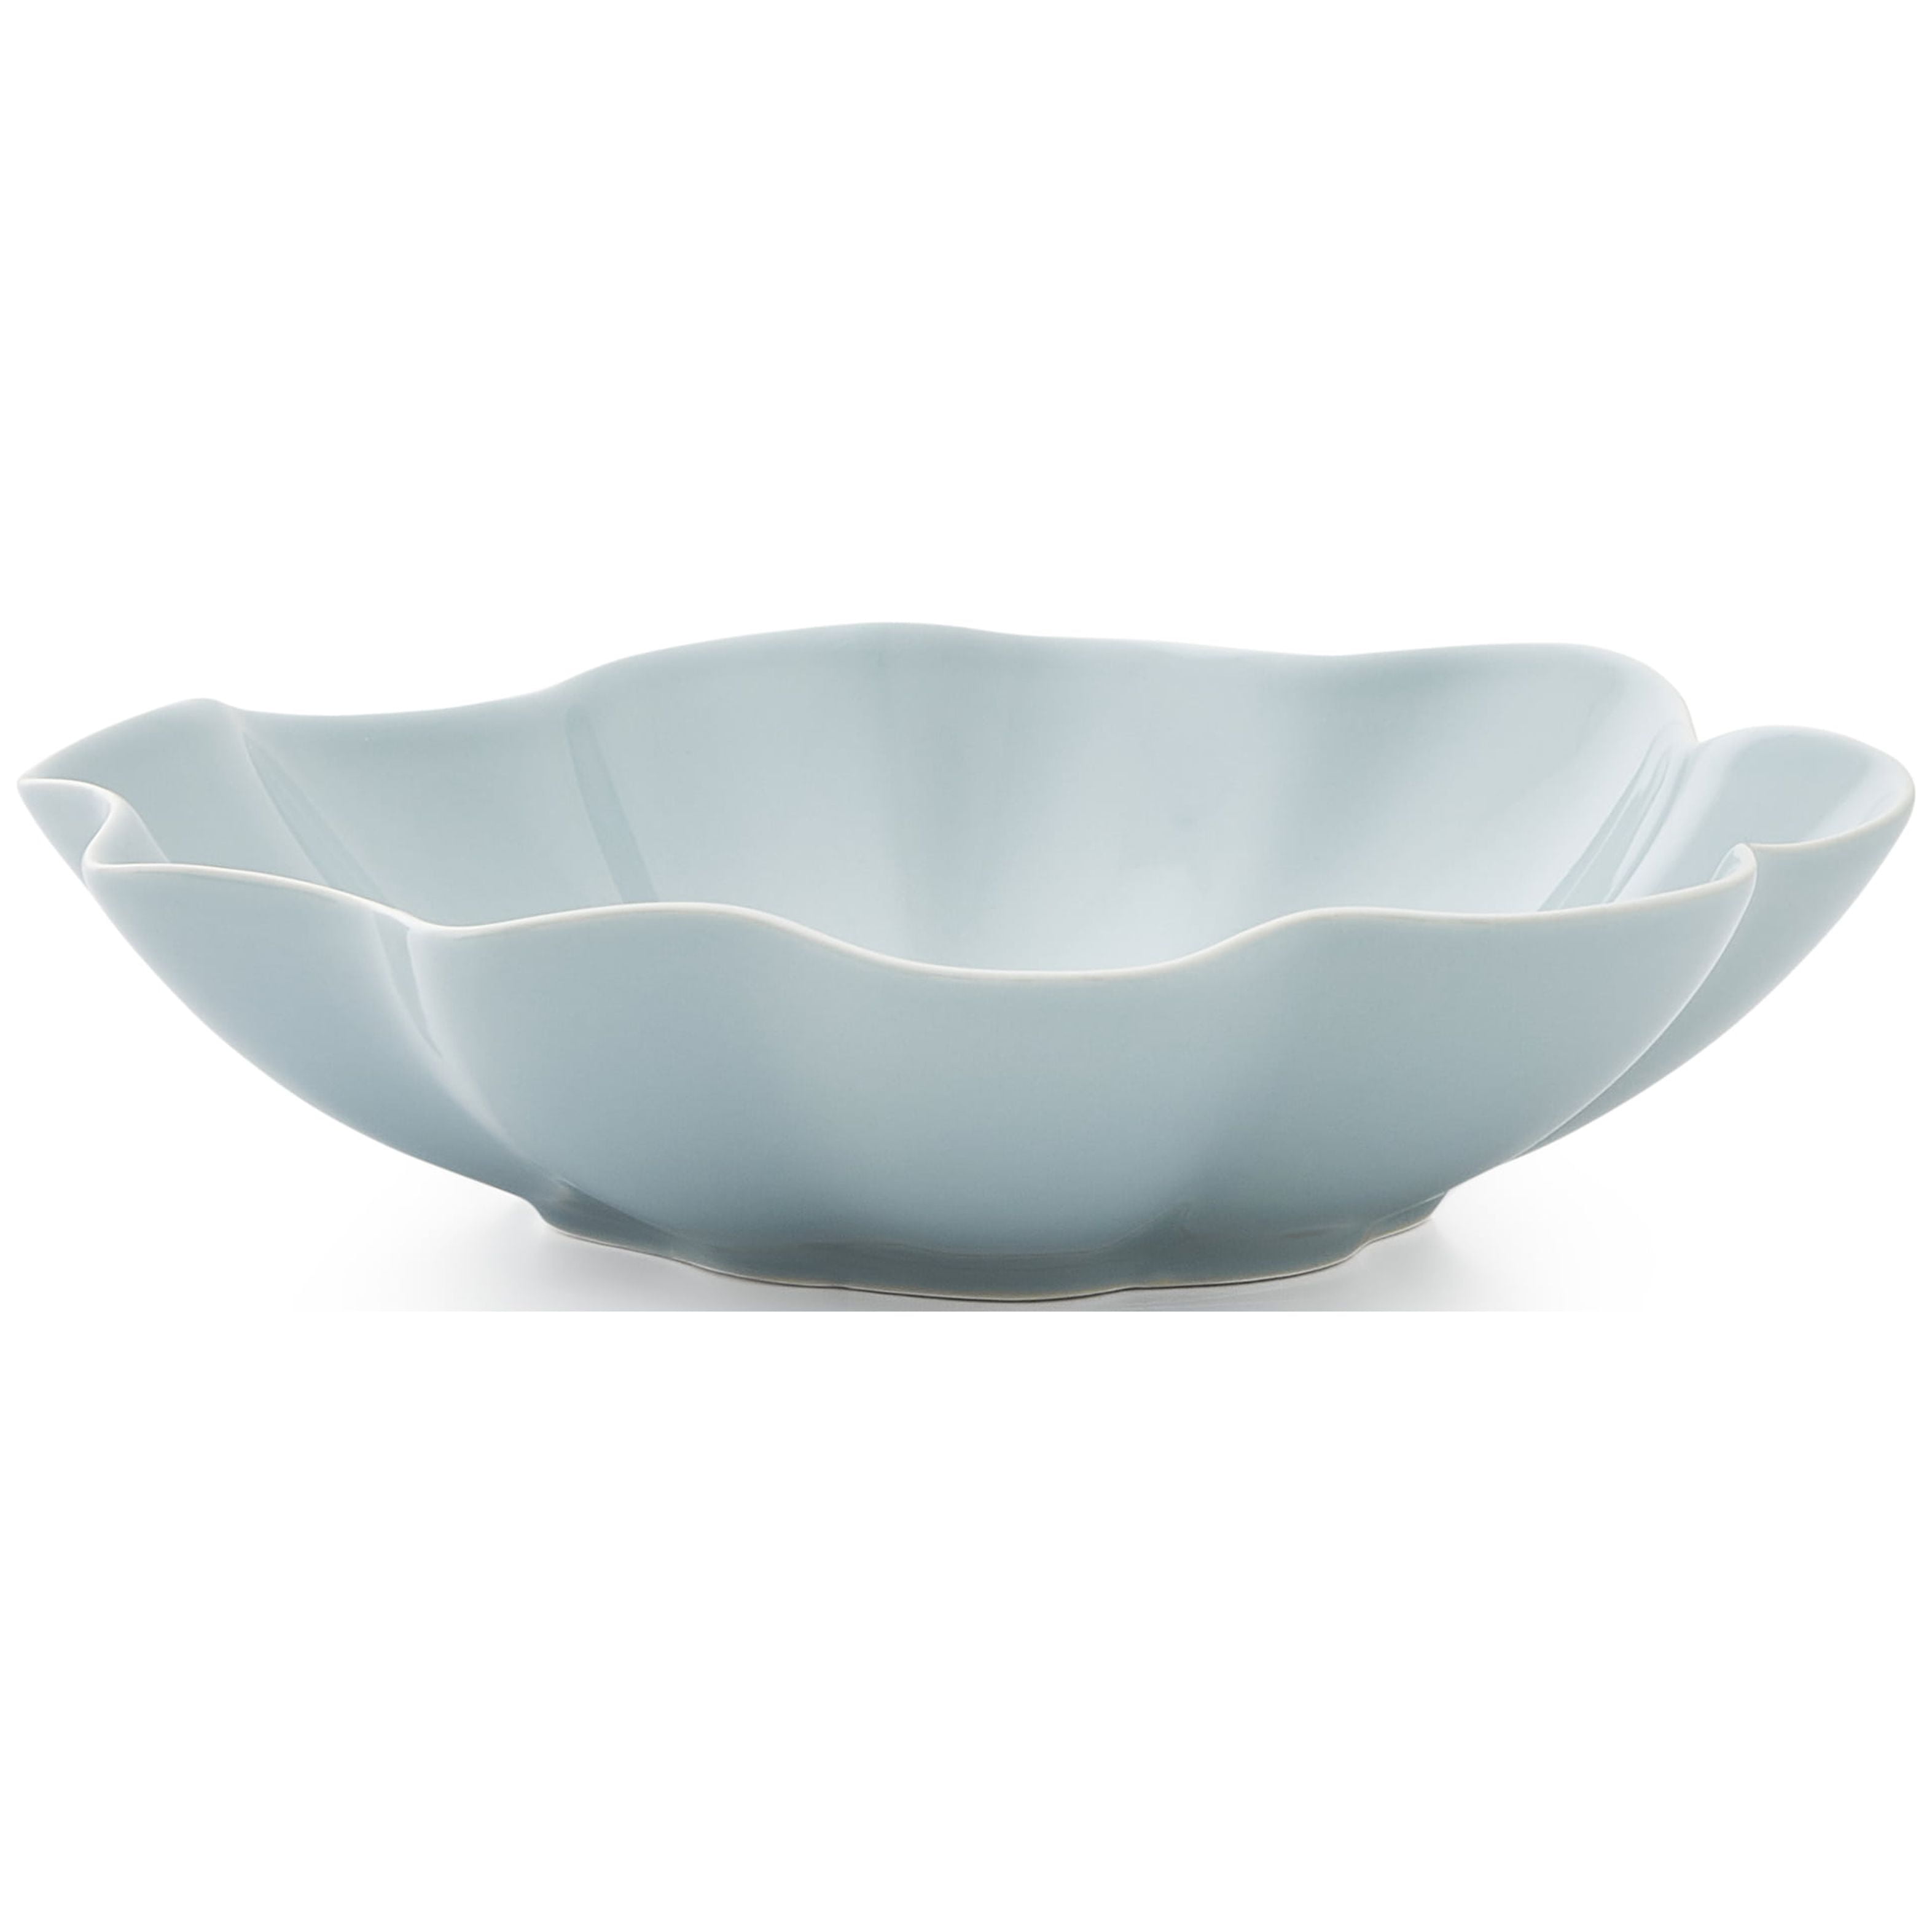 LIFVER 9inch Porcelain Soup Bowls Set of 4, 48 oz White Large Pasta Bowl,  Deep Serve Bowls for Salad/Cereal 